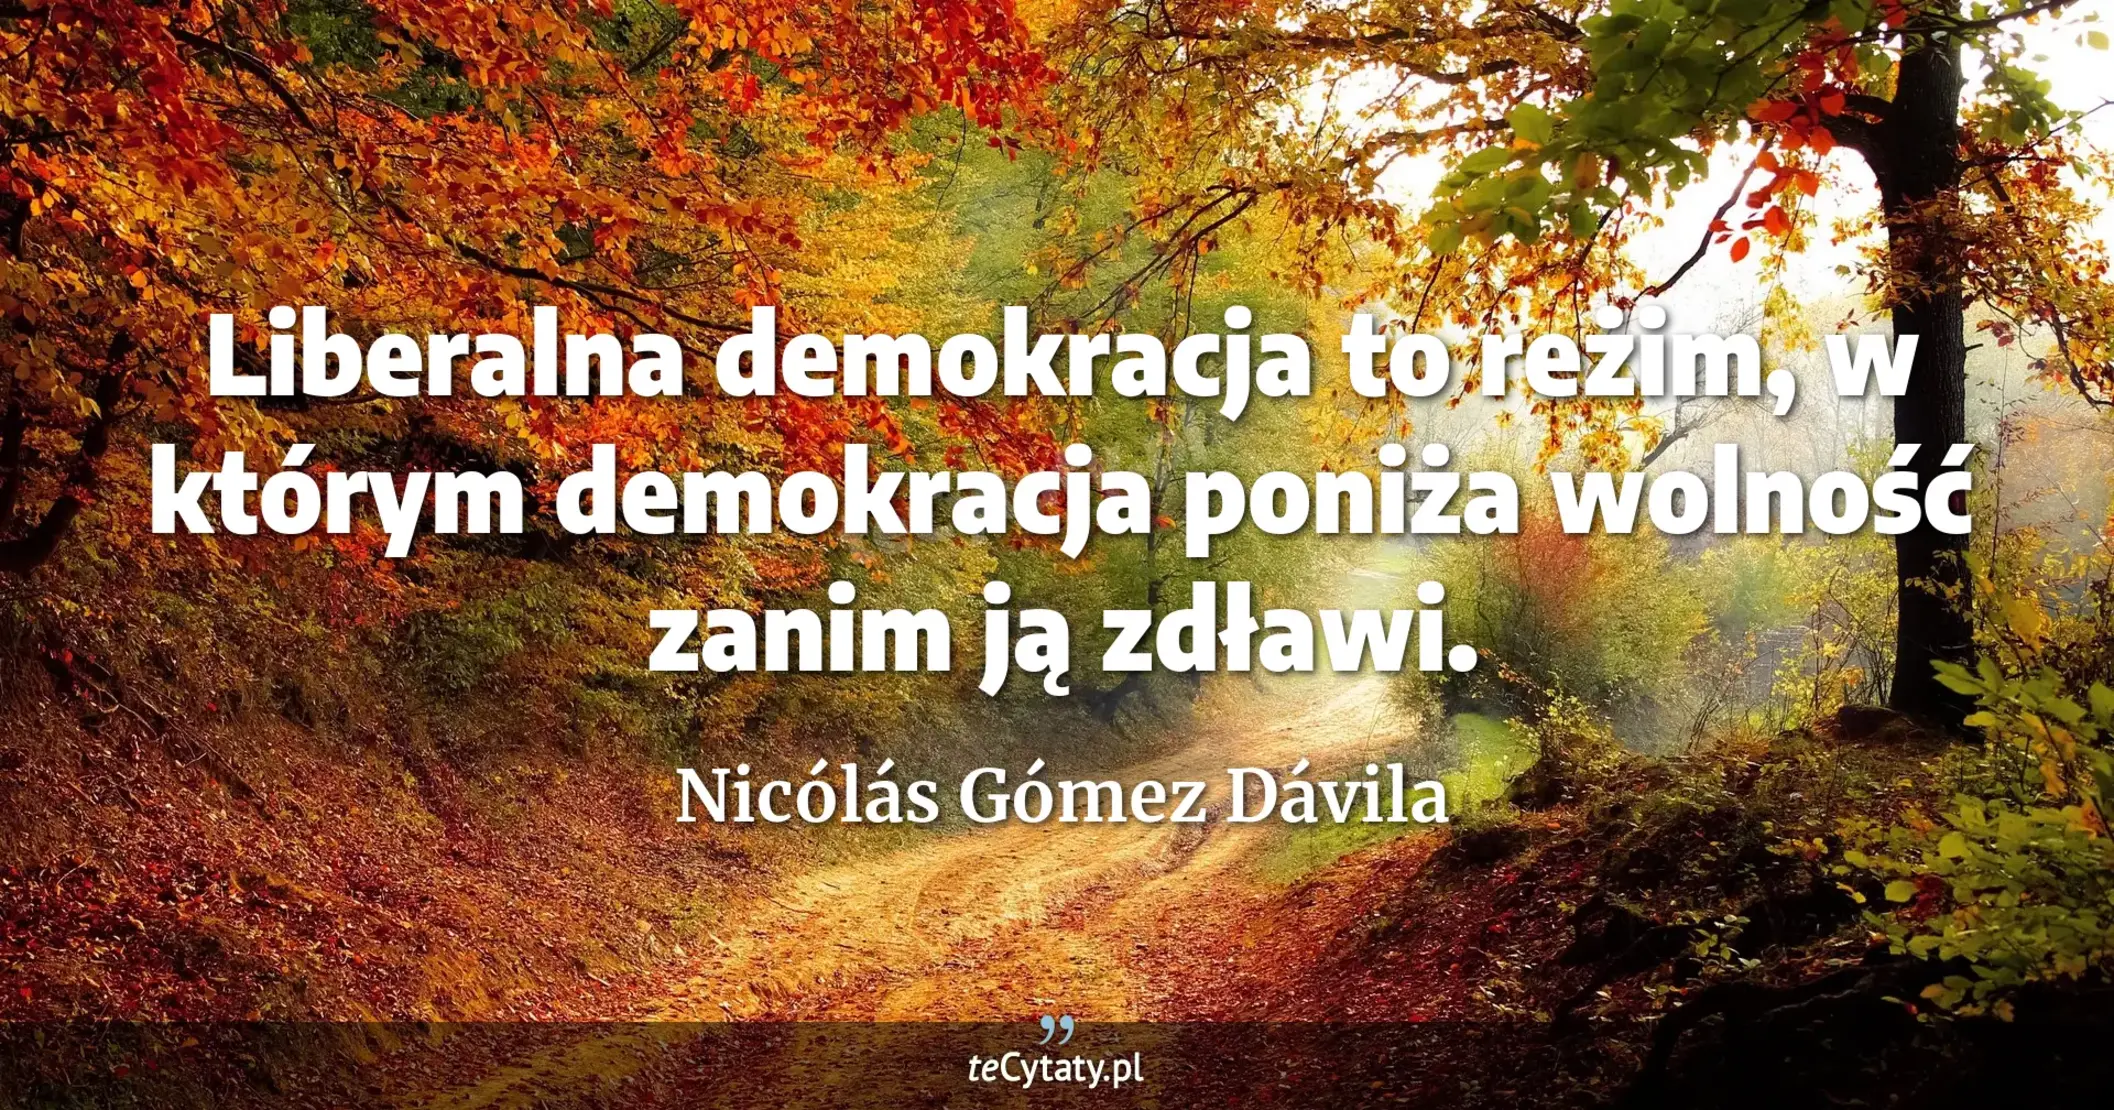 Liberalna demokracja to reżim, w którym demokracja poniża wolność zanim ją zdławi. - Nicólás Gómez Dávila